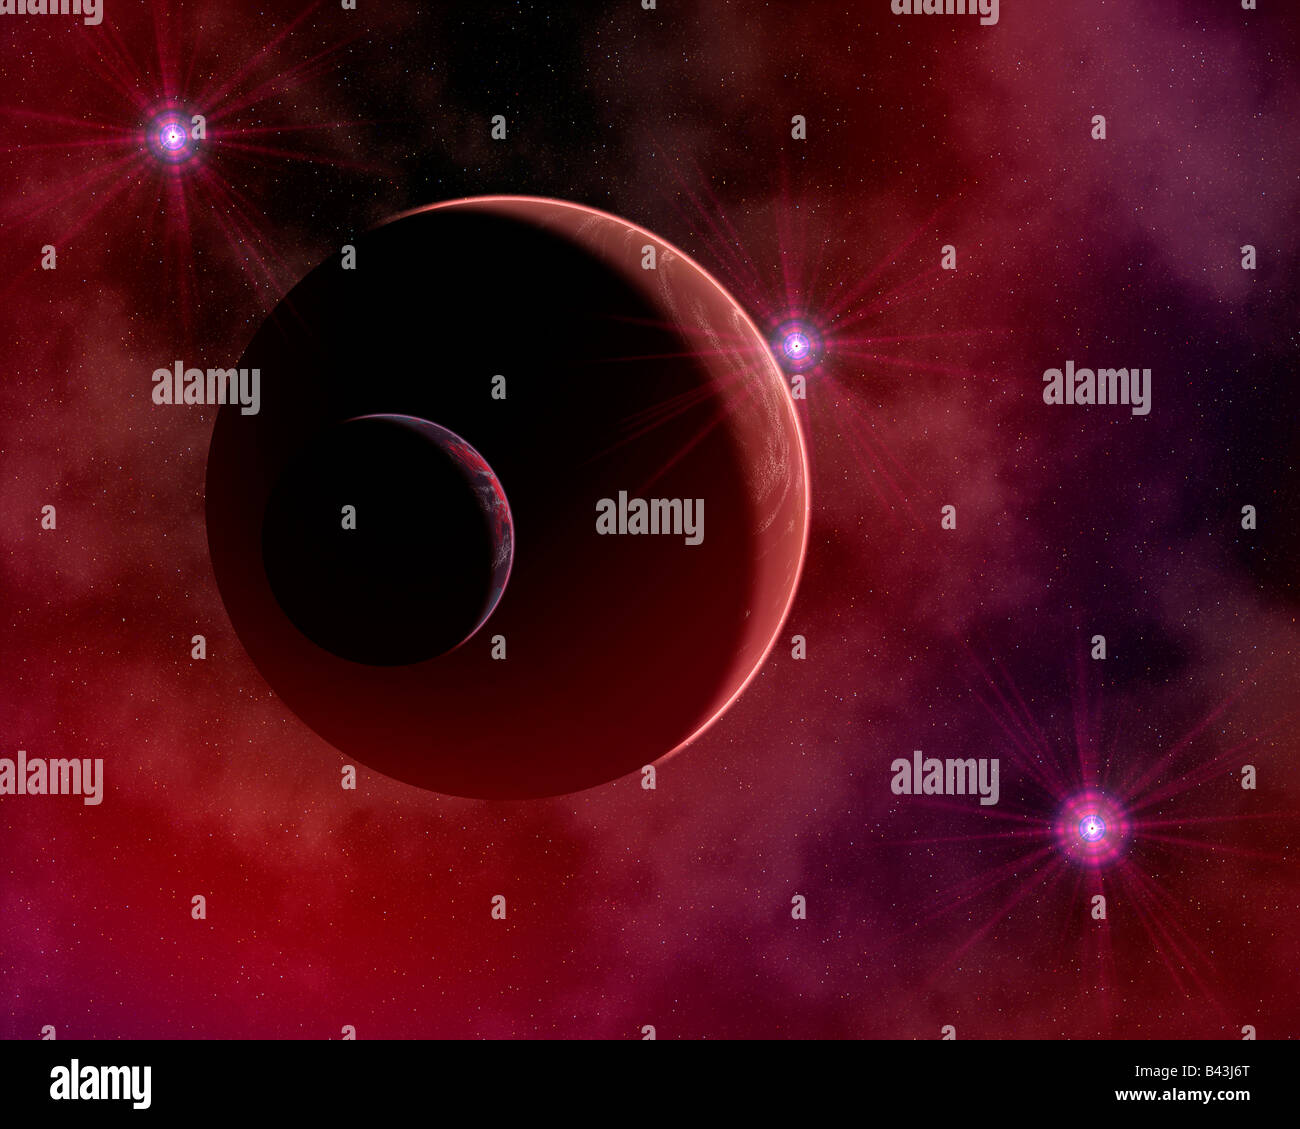 Un planeta rojo dentro de una nebulosa, iluminada por estrellas jóvenes. Foto de stock